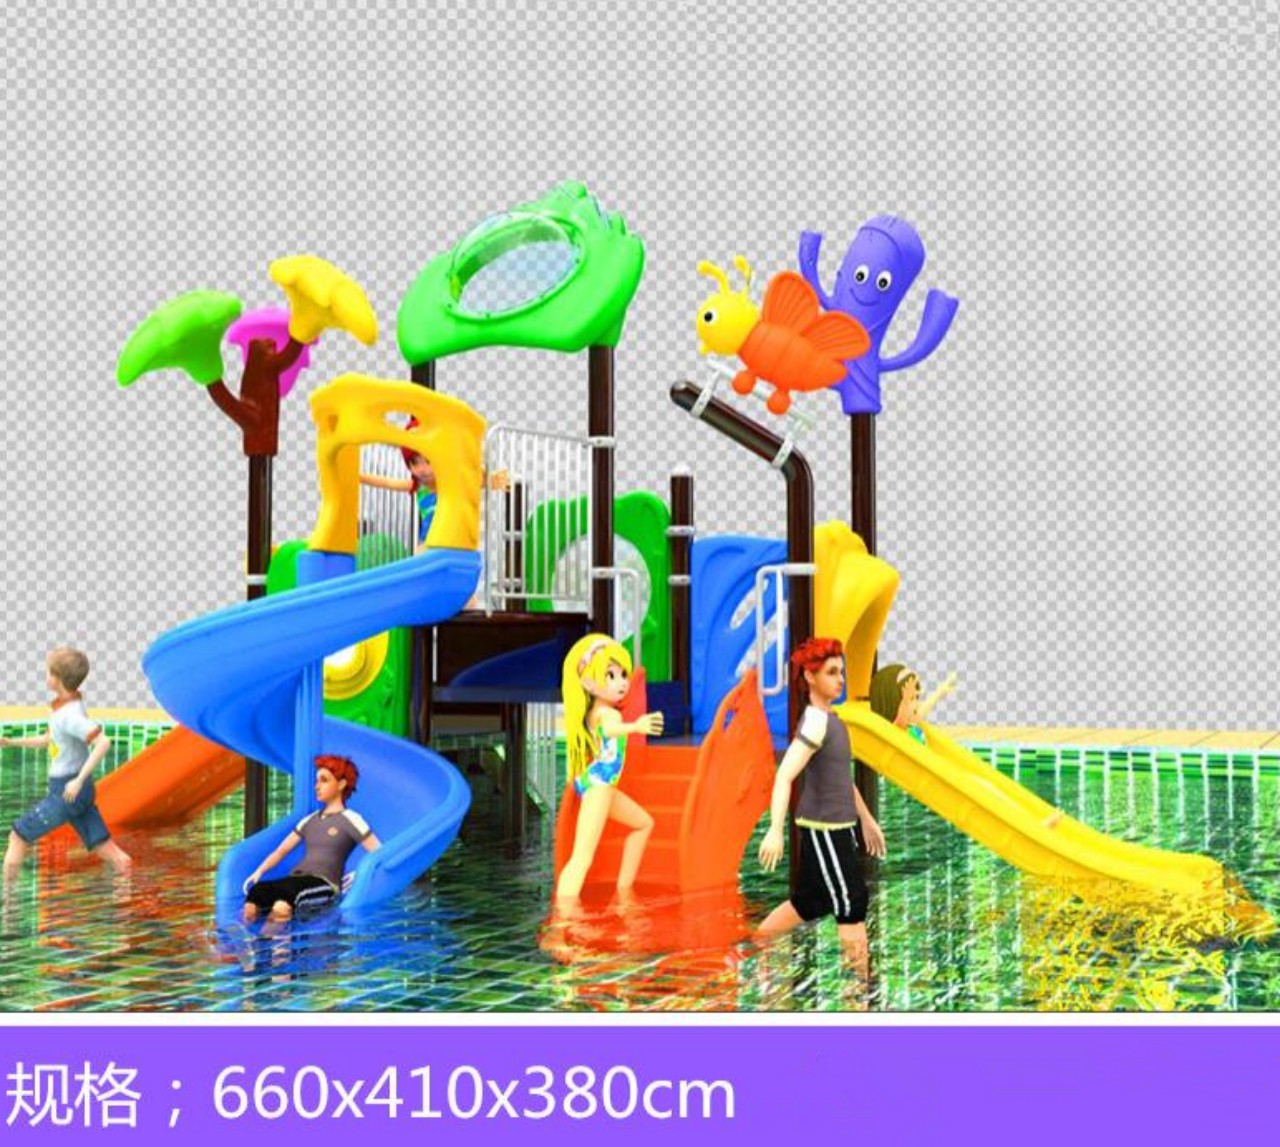 Thiết kế đồ chơi công viên nước - Đồ Chơi Đại Việt - Công Ty TNHH Một Thành Viên Sản Xuất Thương Mại Dịch Vụ Đồ Chơi Đại Việt